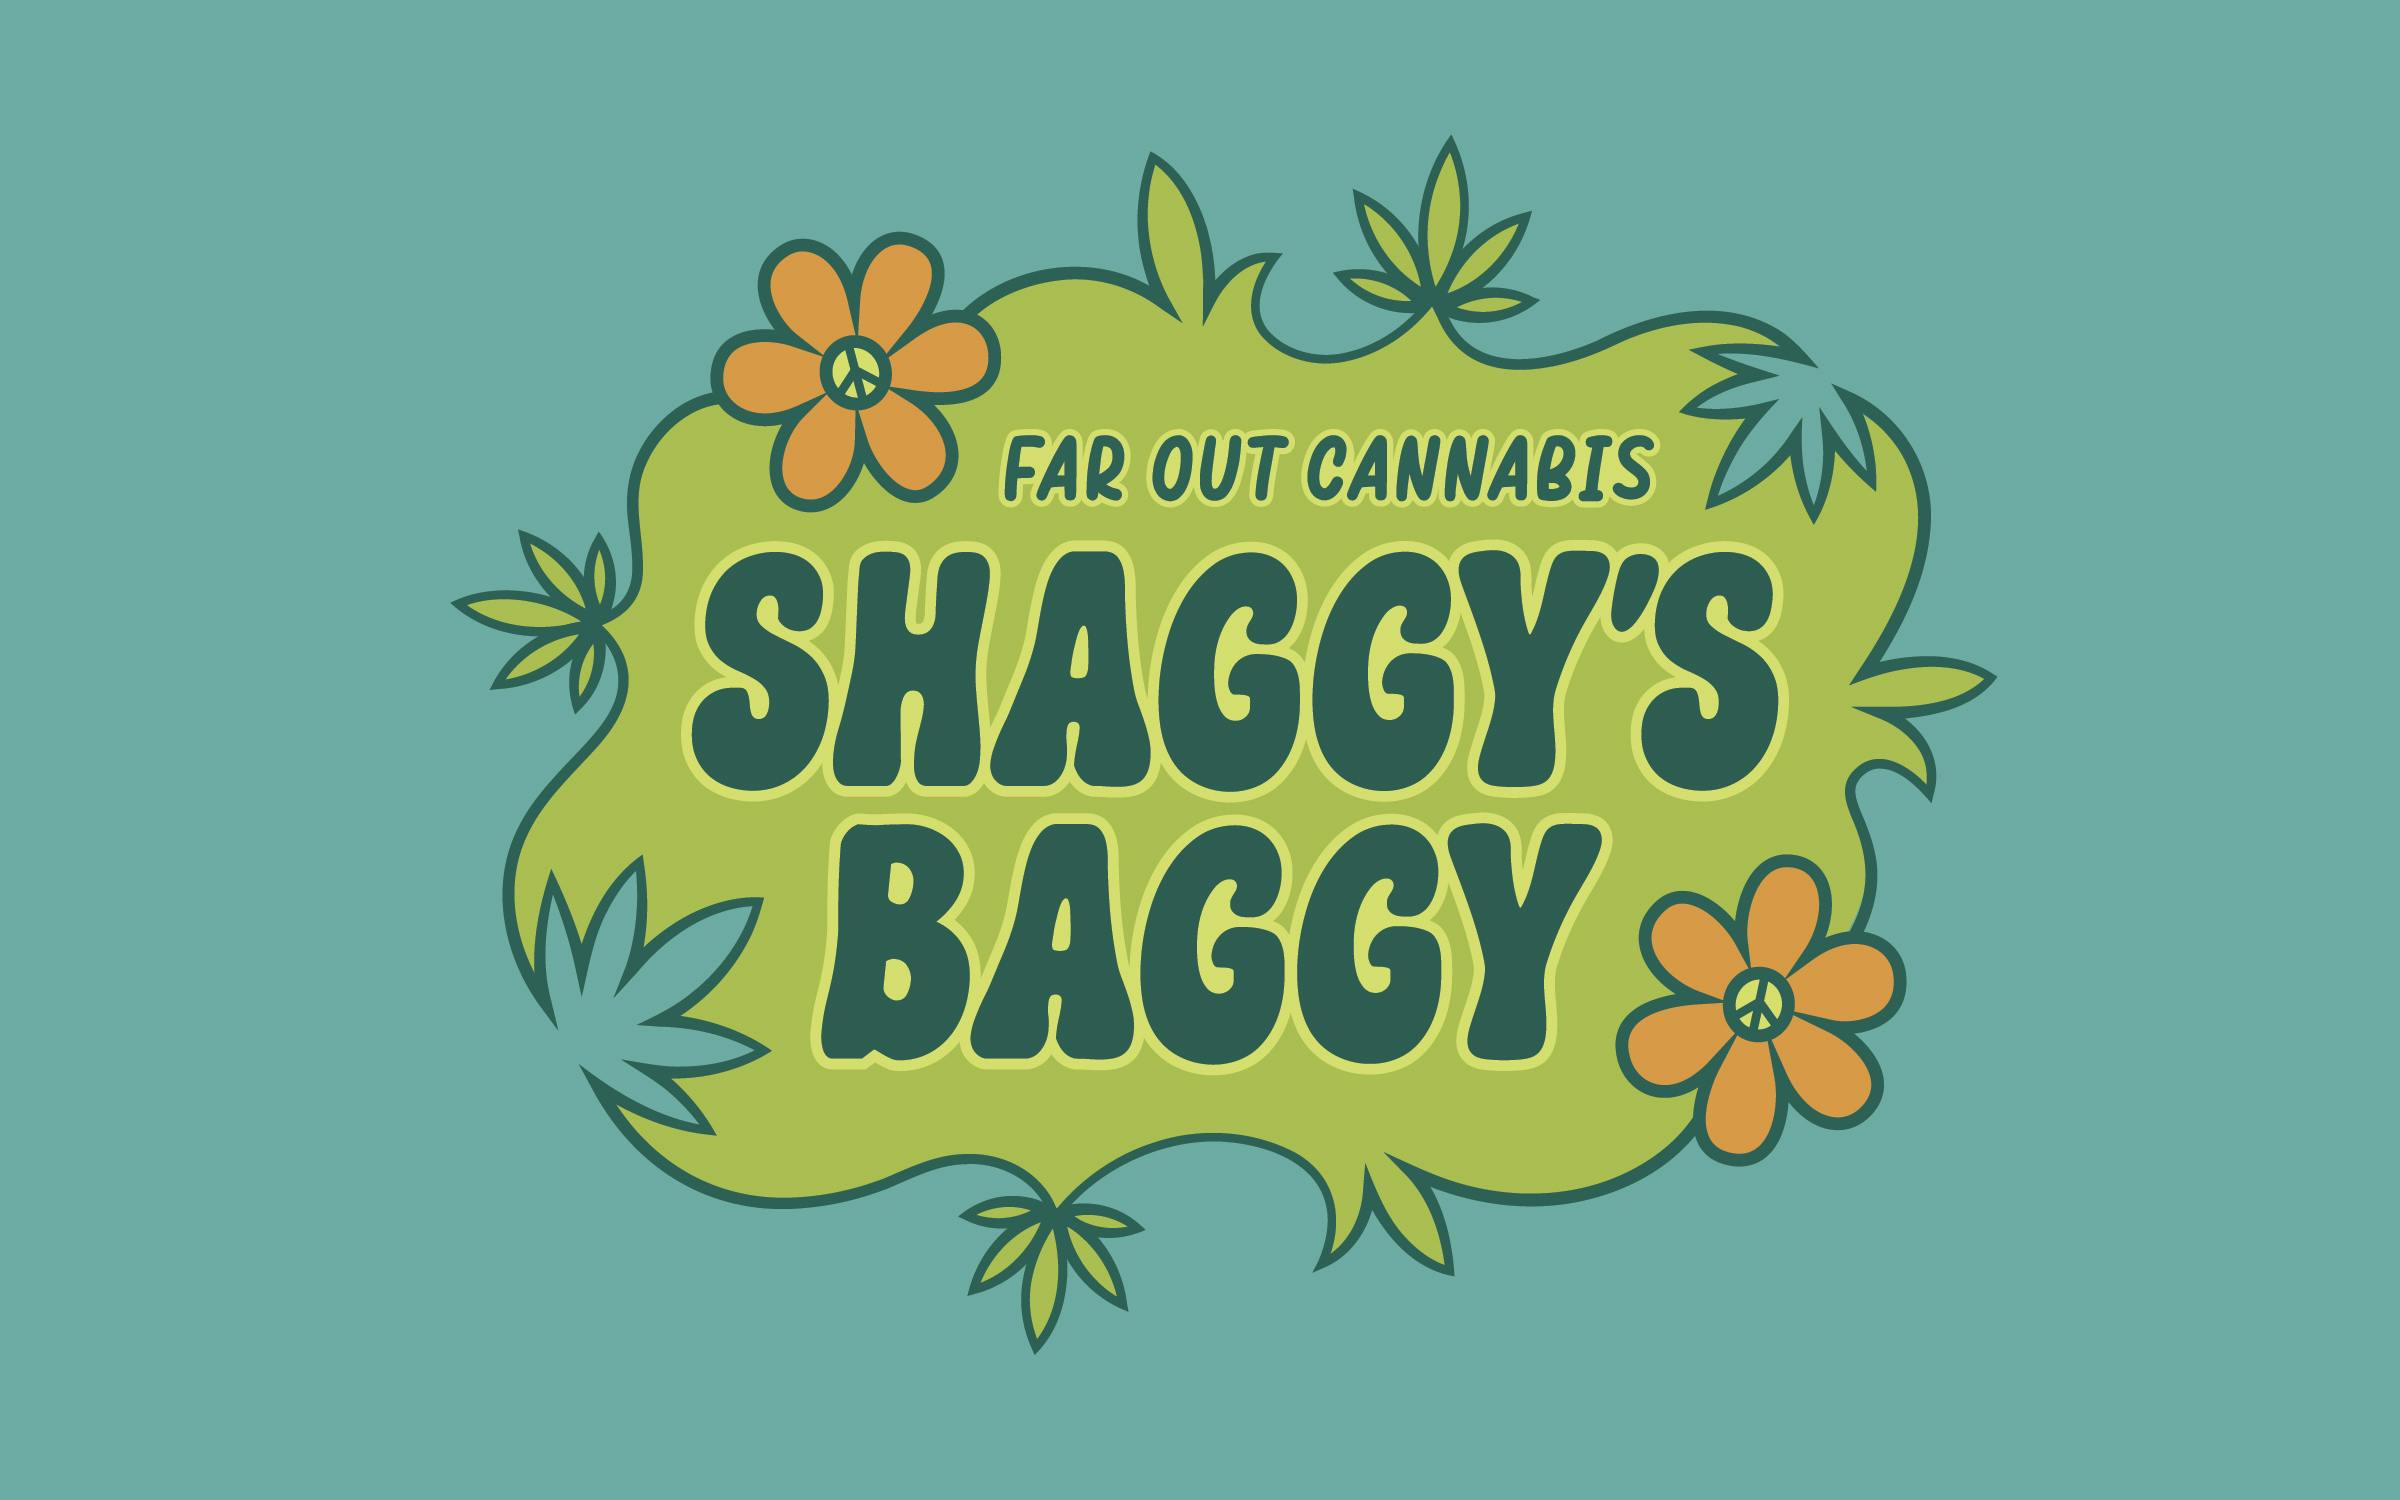 Shaggy's Baggy